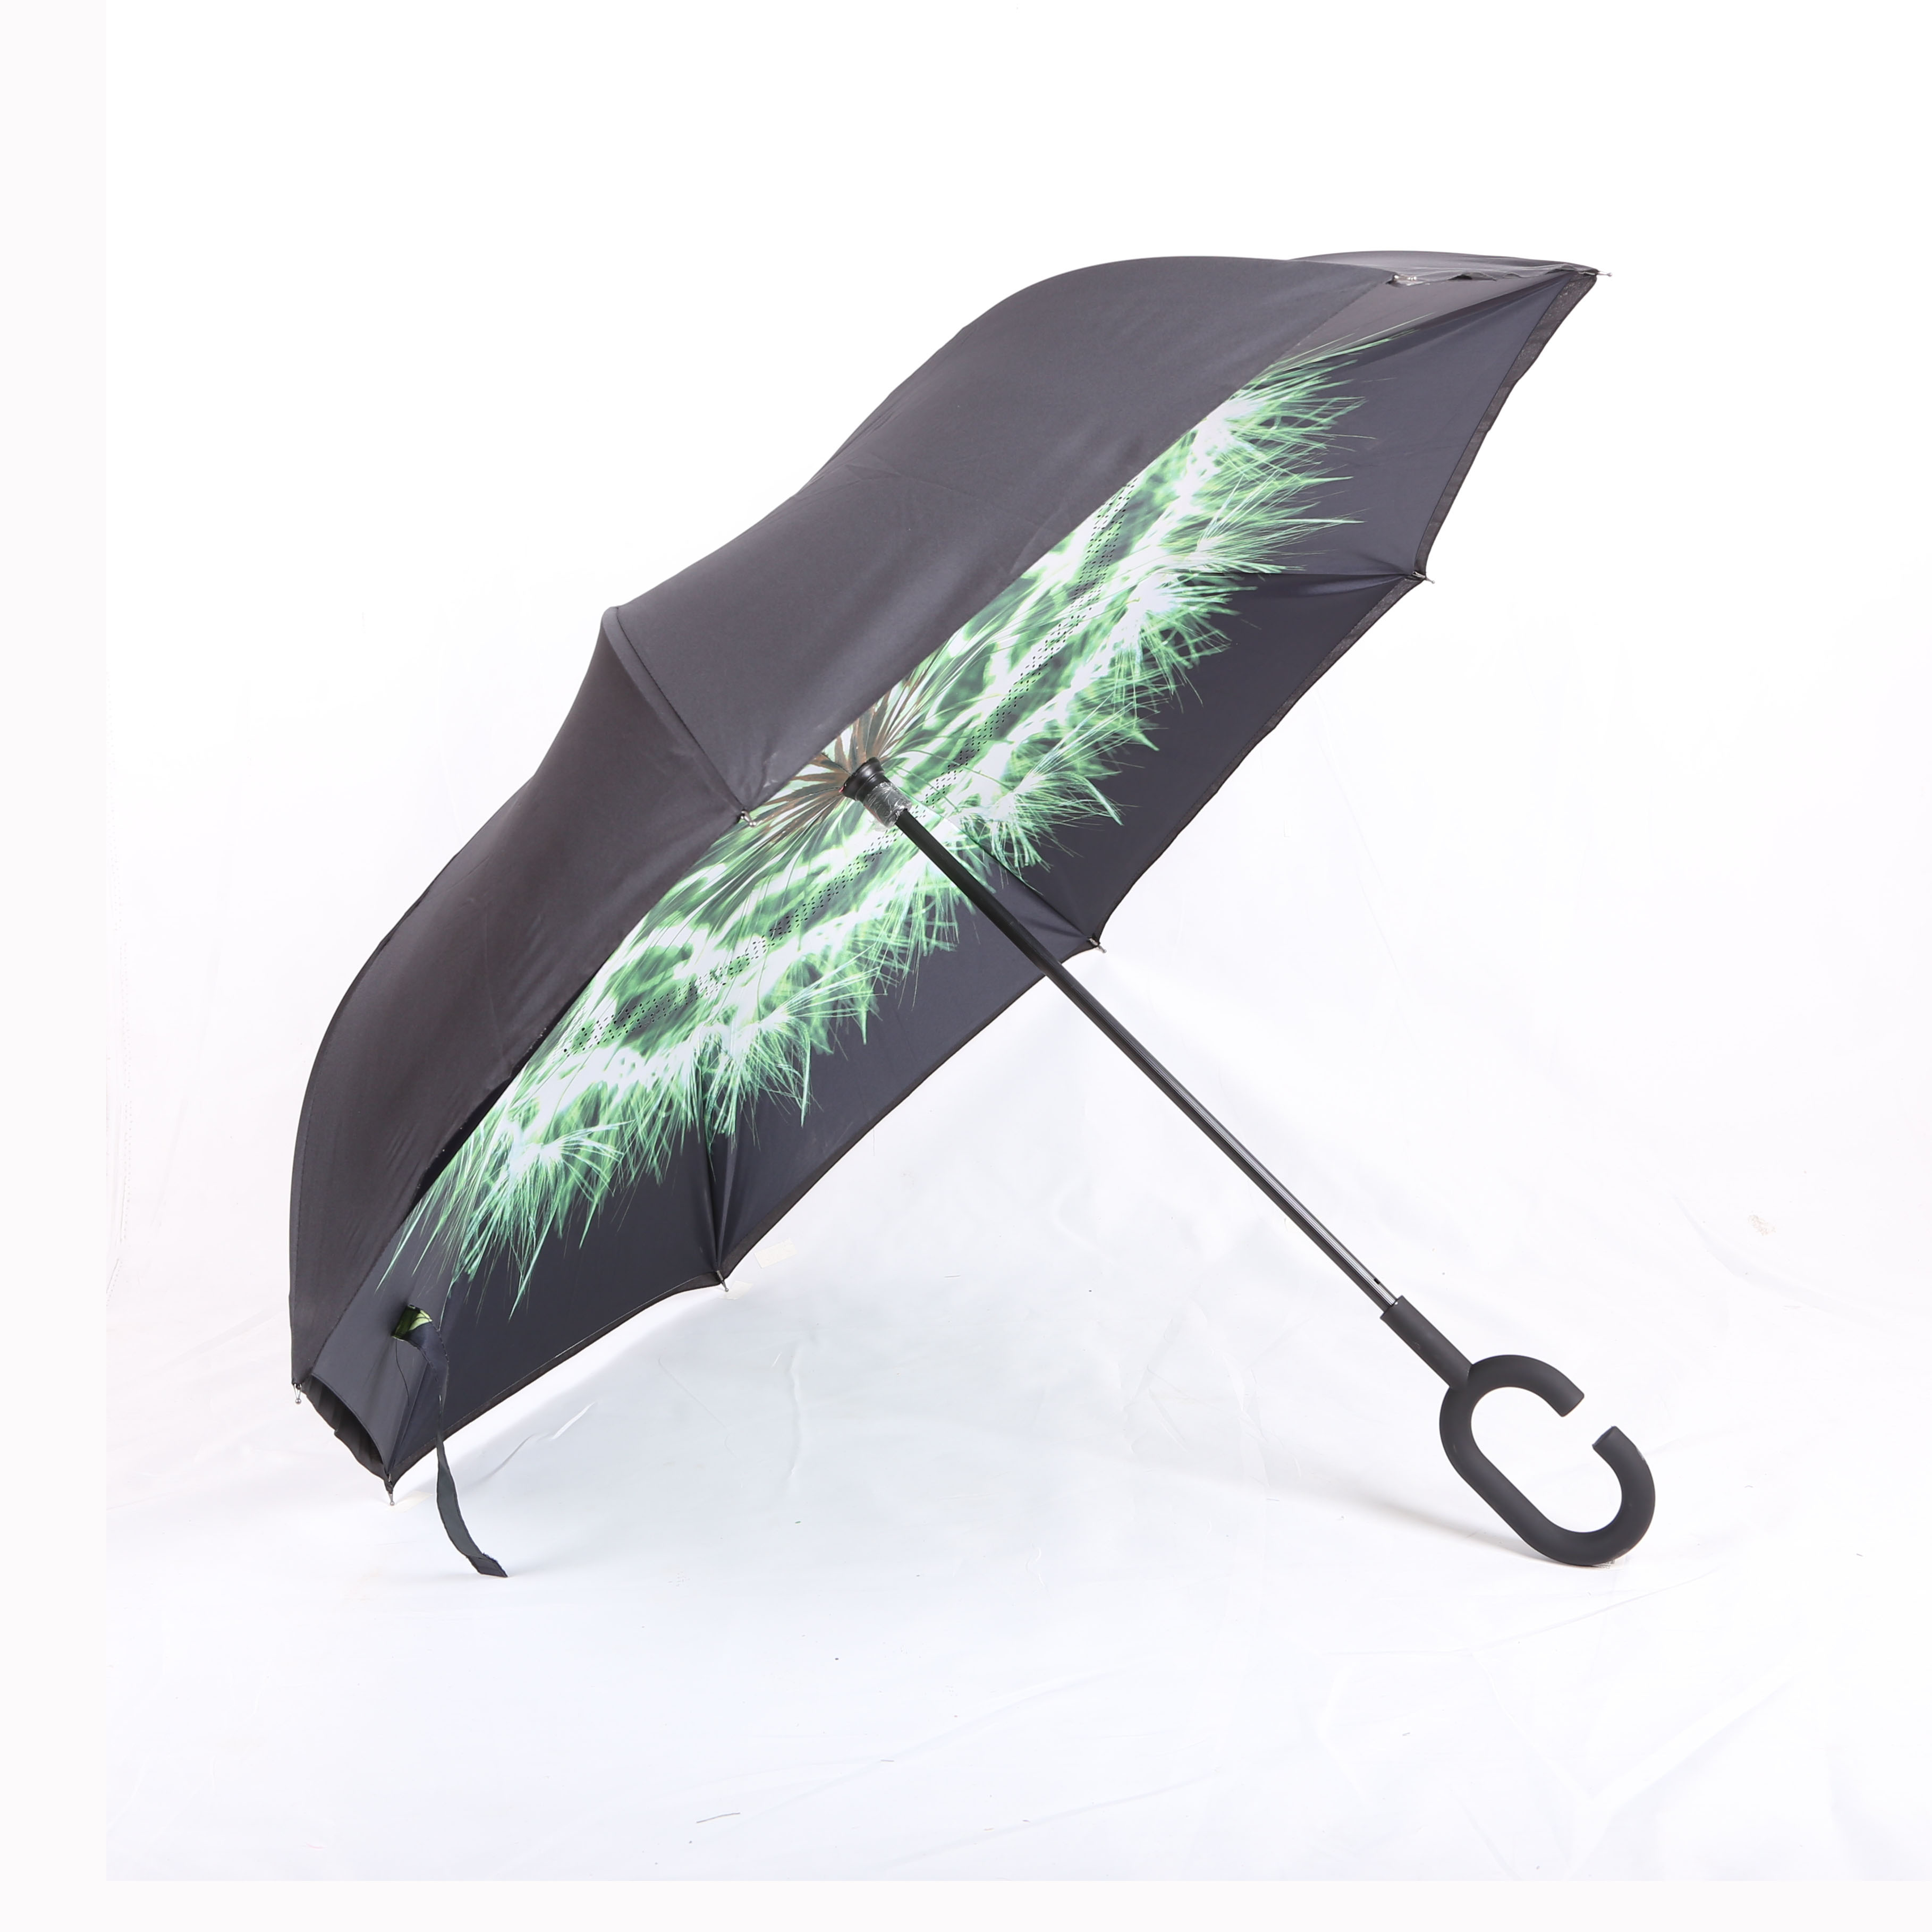 反向伞汽车晴雨伞免持式长柄反转遮阳伞太阳伞可定制LOGO广告伞